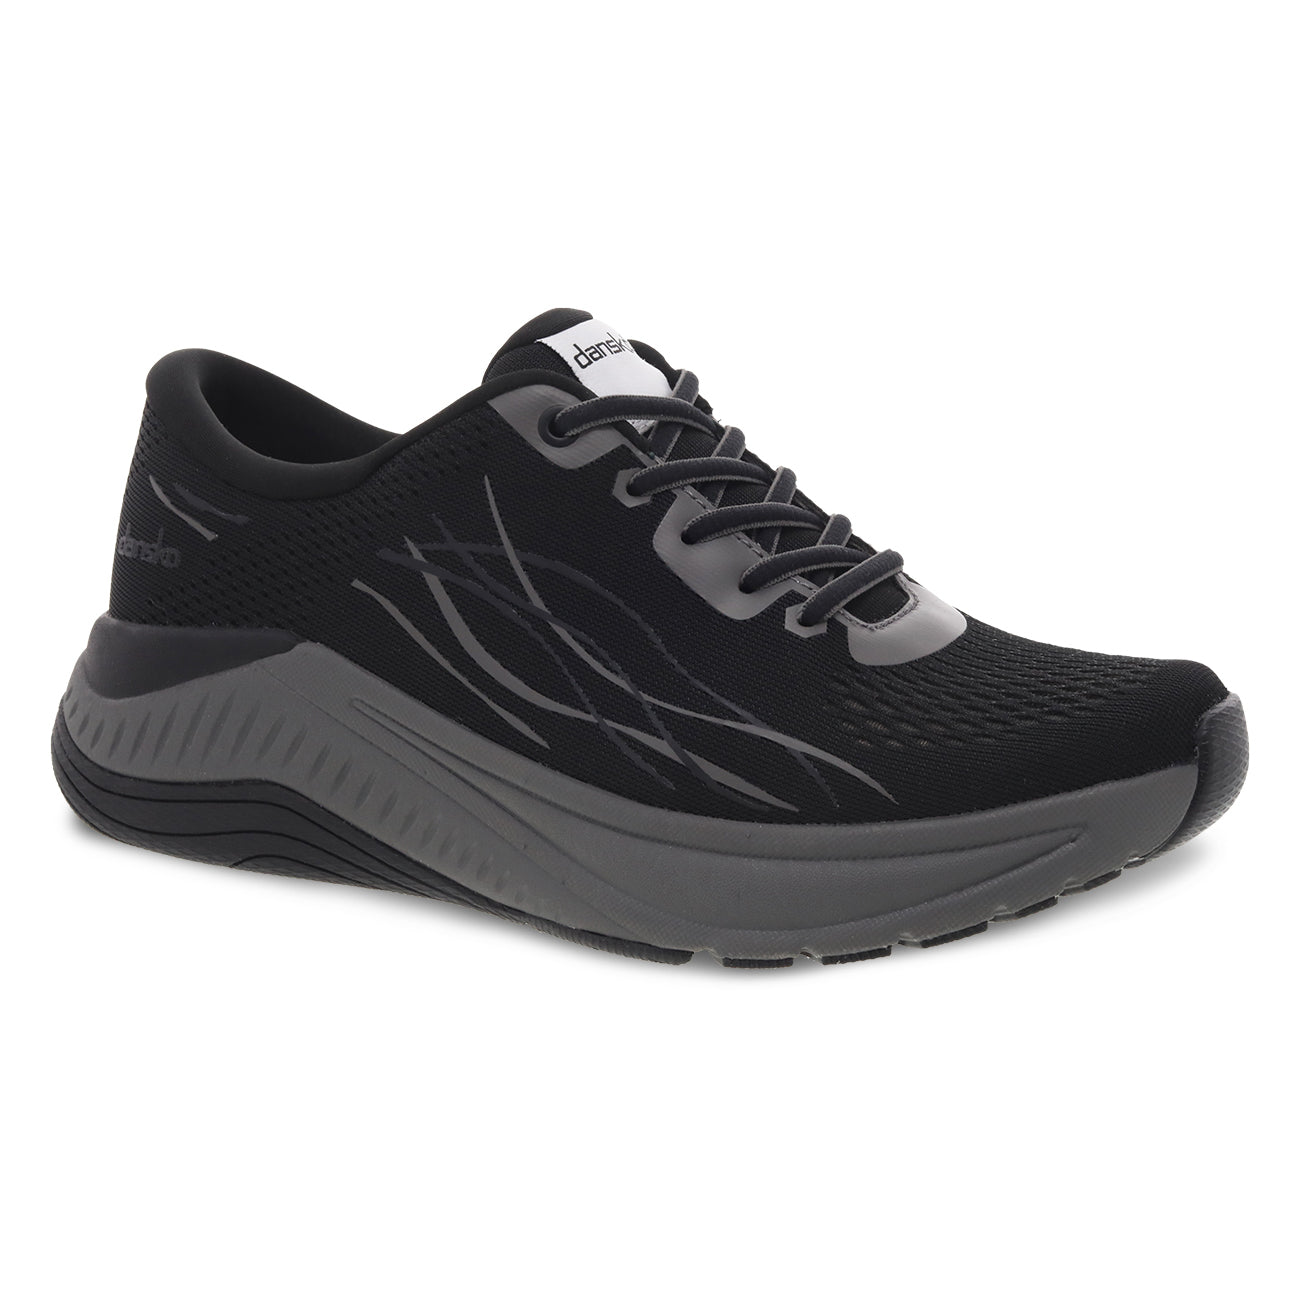 Dansko Women's Pace Walking Shoe - Black with Grey – Alamo Shoes